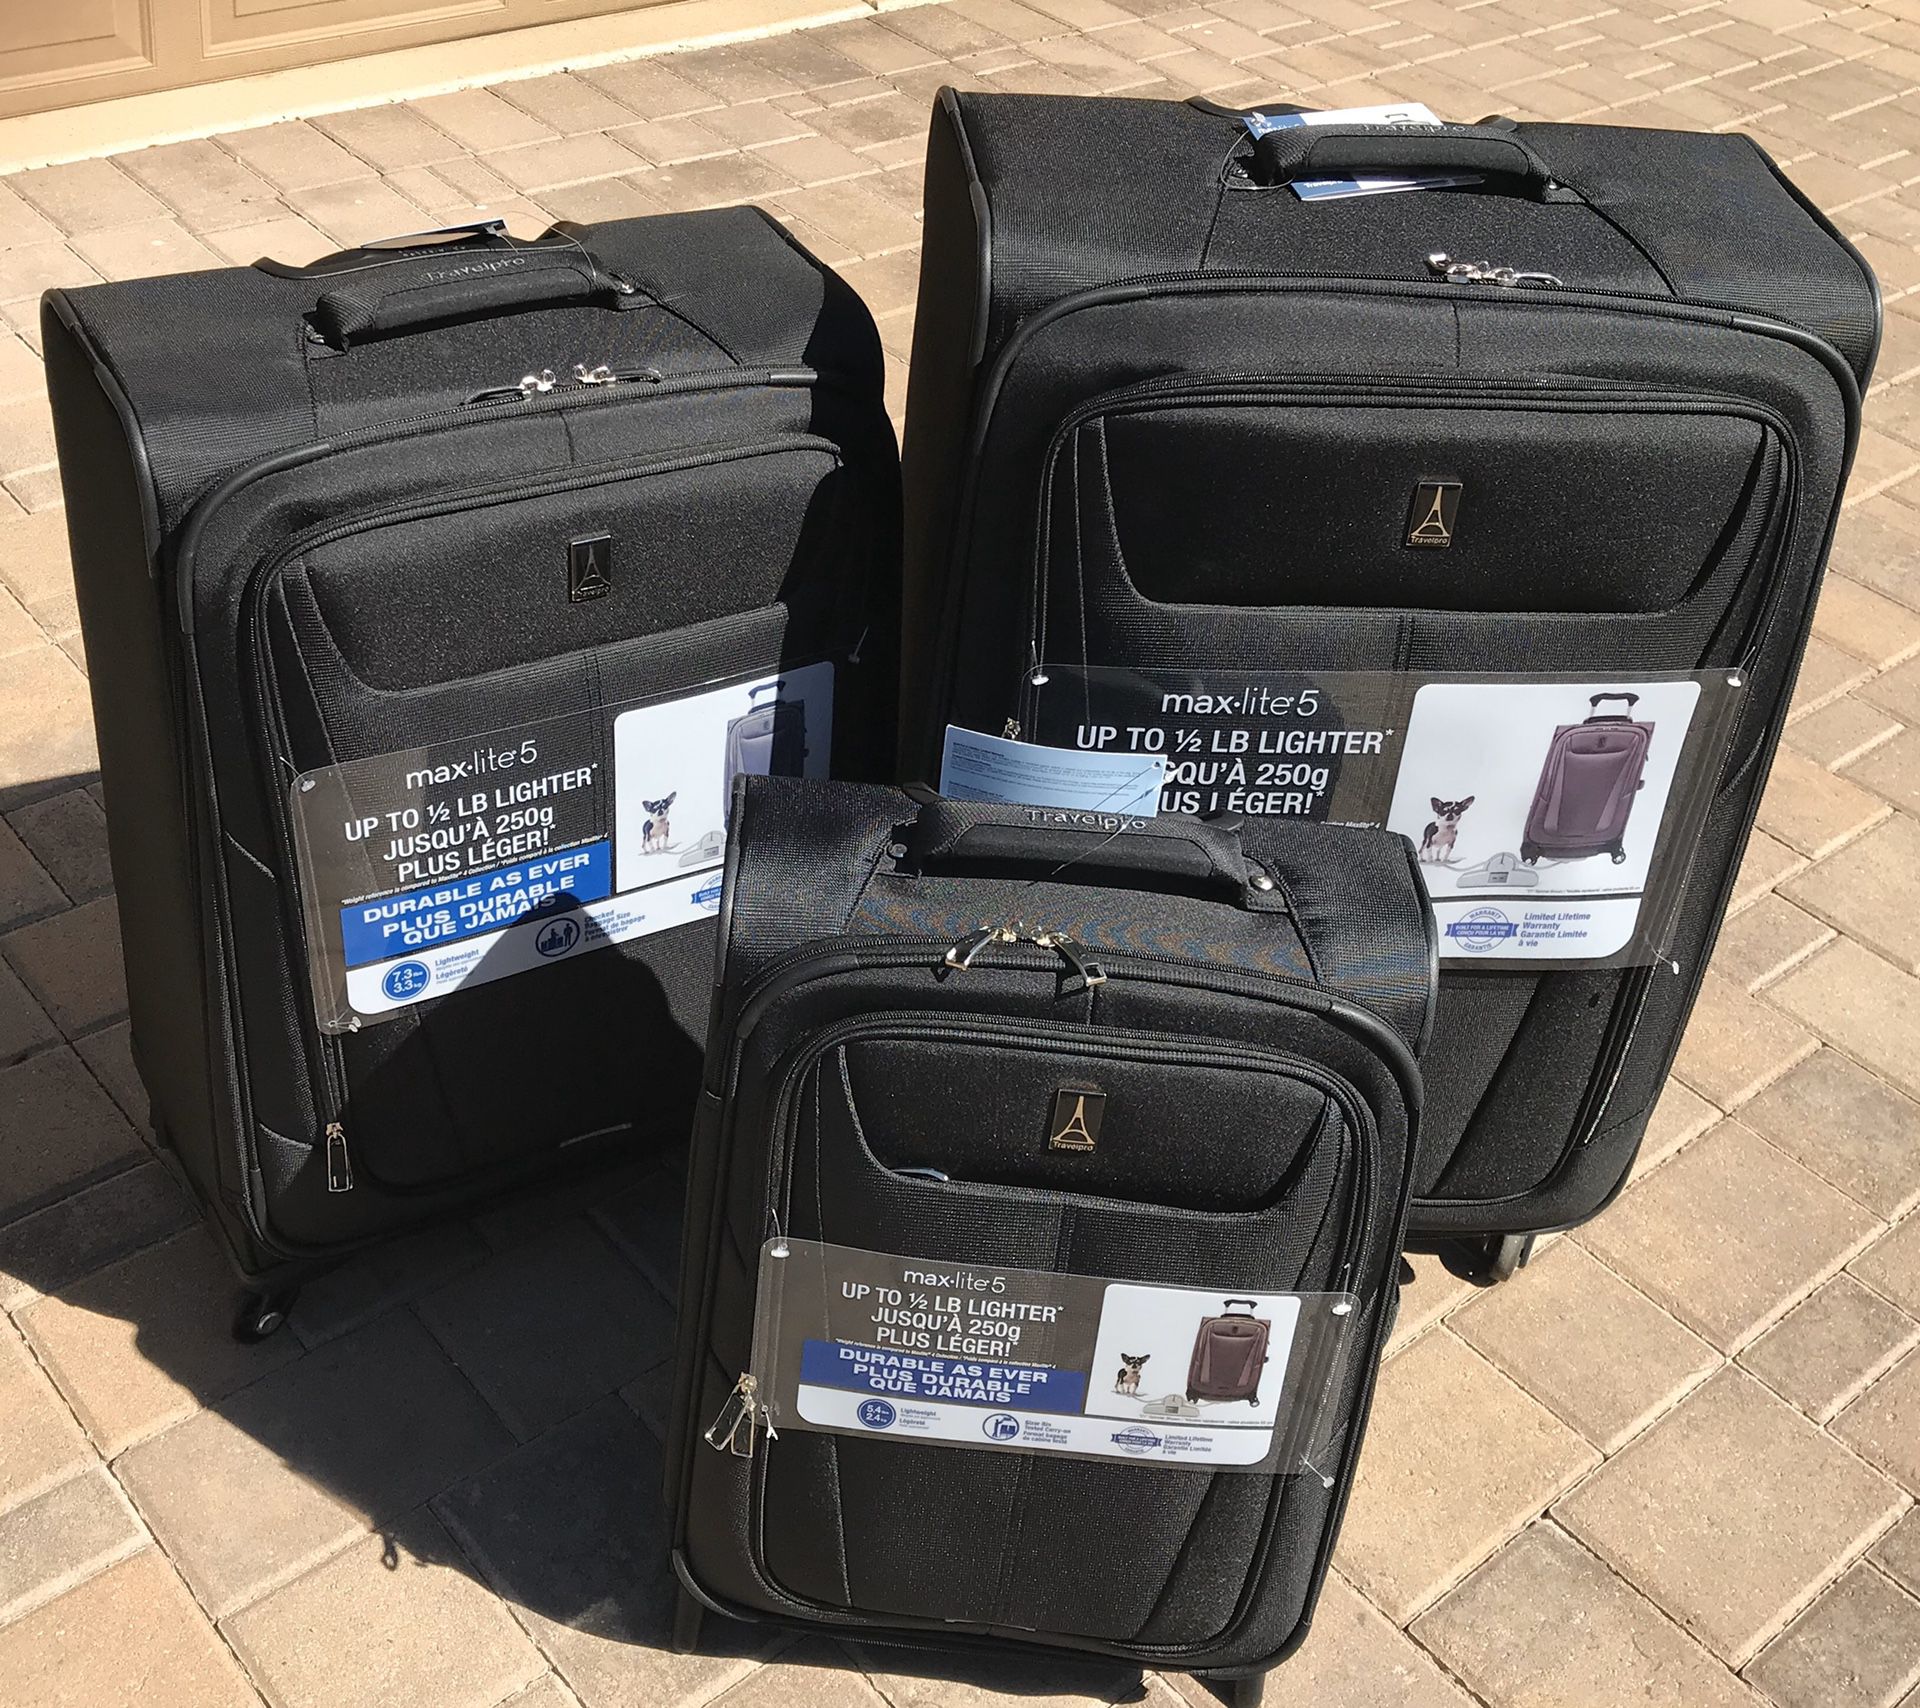 Travel Pro Maxlite 5 Luggage Set